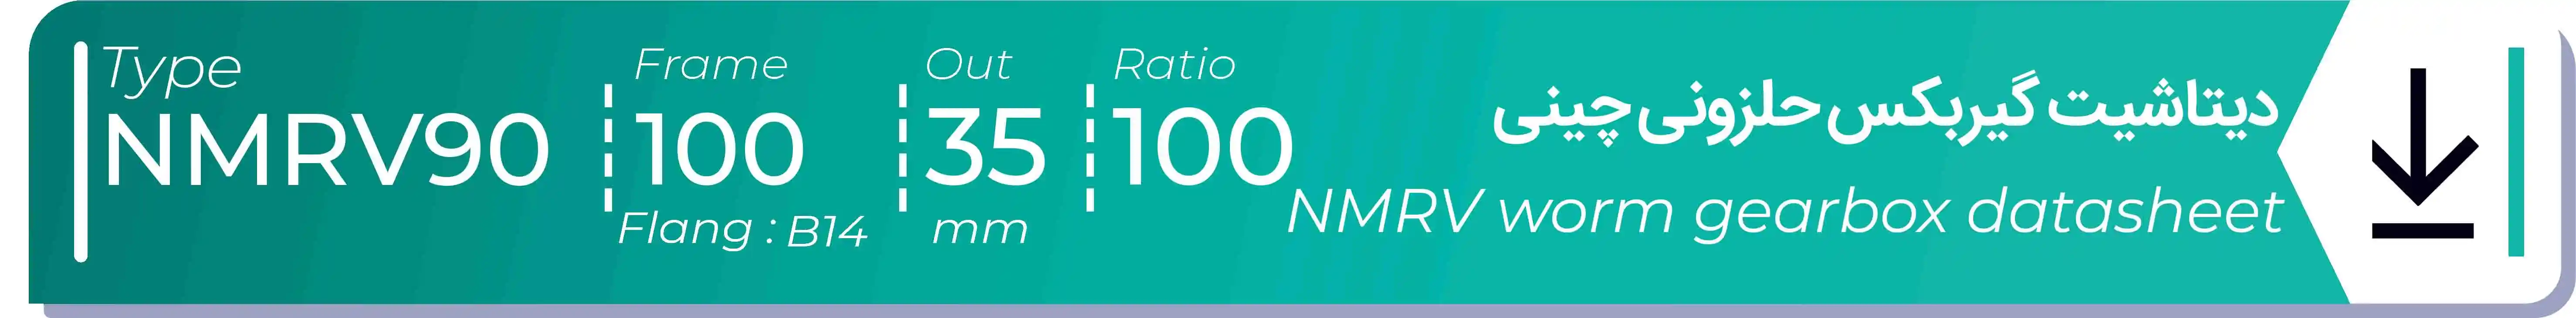  دیتاشیت و مشخصات فنی گیربکس حلزونی چینی   NMRV90  -  با خروجی 35- میلی متر و نسبت100 و فریم 100